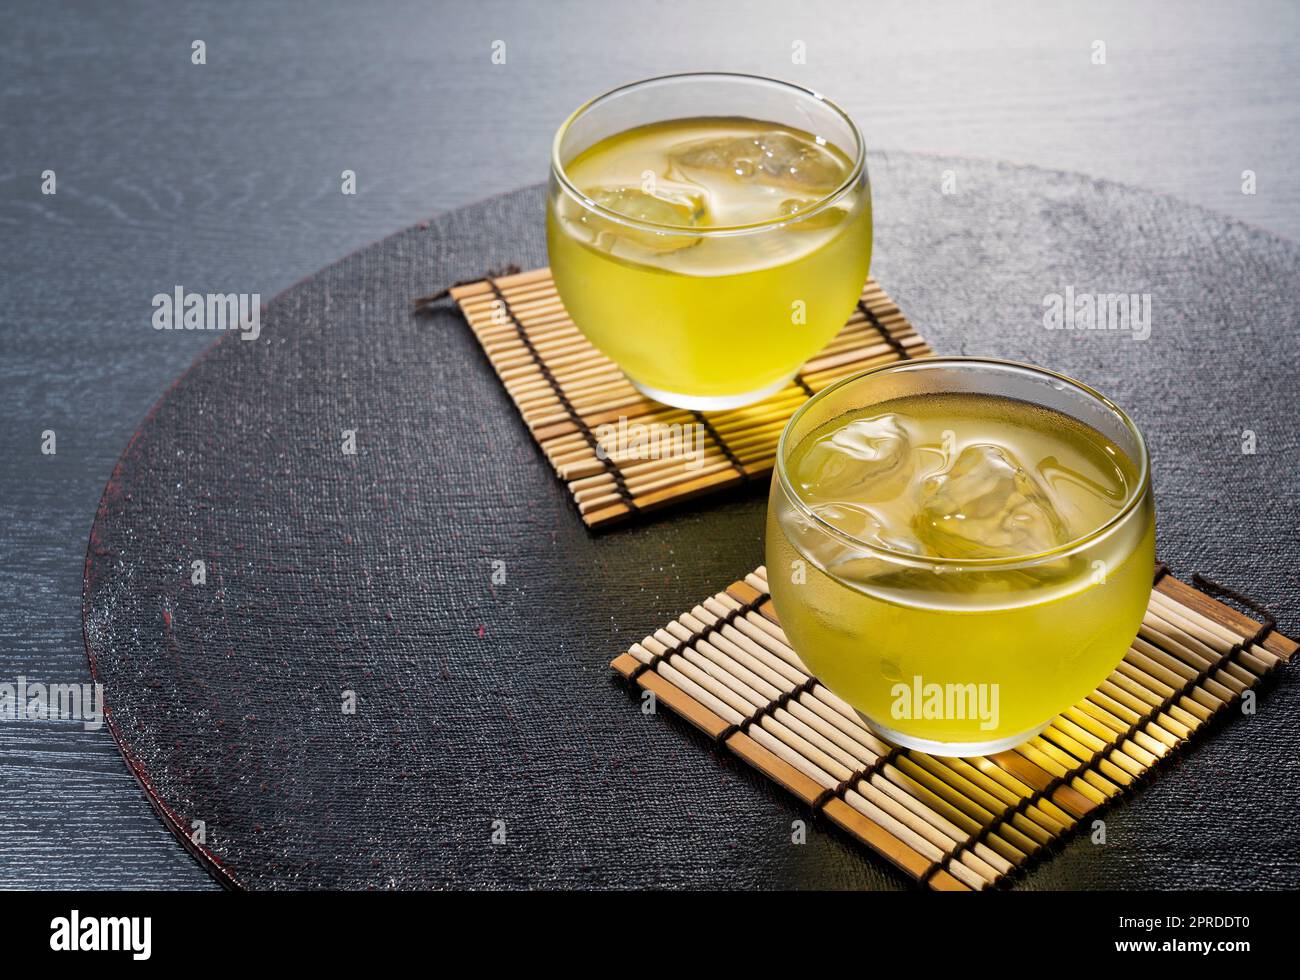 Kalter japanischer grüner Tee auf einem schwarzen Tablett. Stockfoto